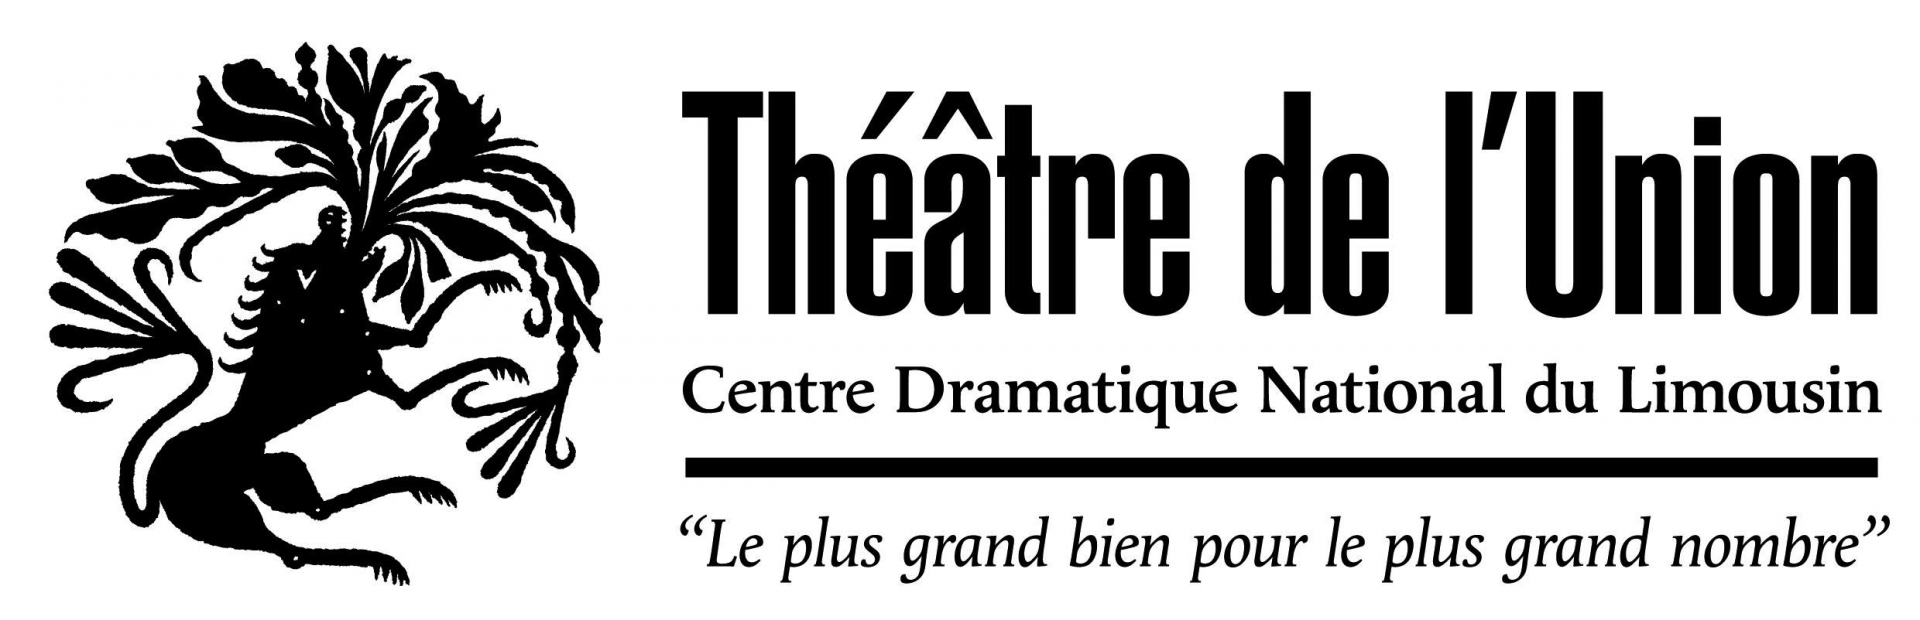 Theatredelunion logo